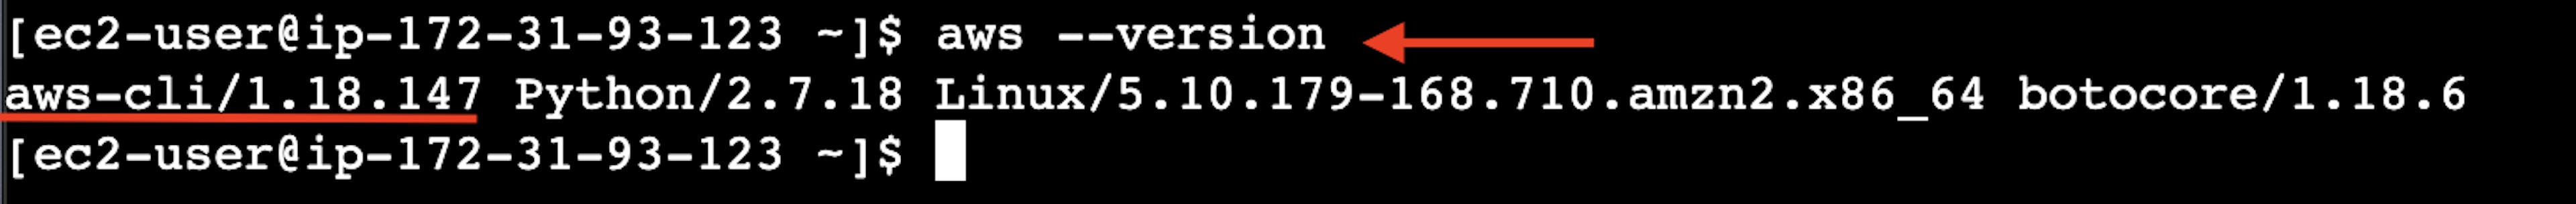 La capture d'écran du terminal en ligne de l'instance de serveur virtuel AWS EC2 avec le résultat de la commande de version aws